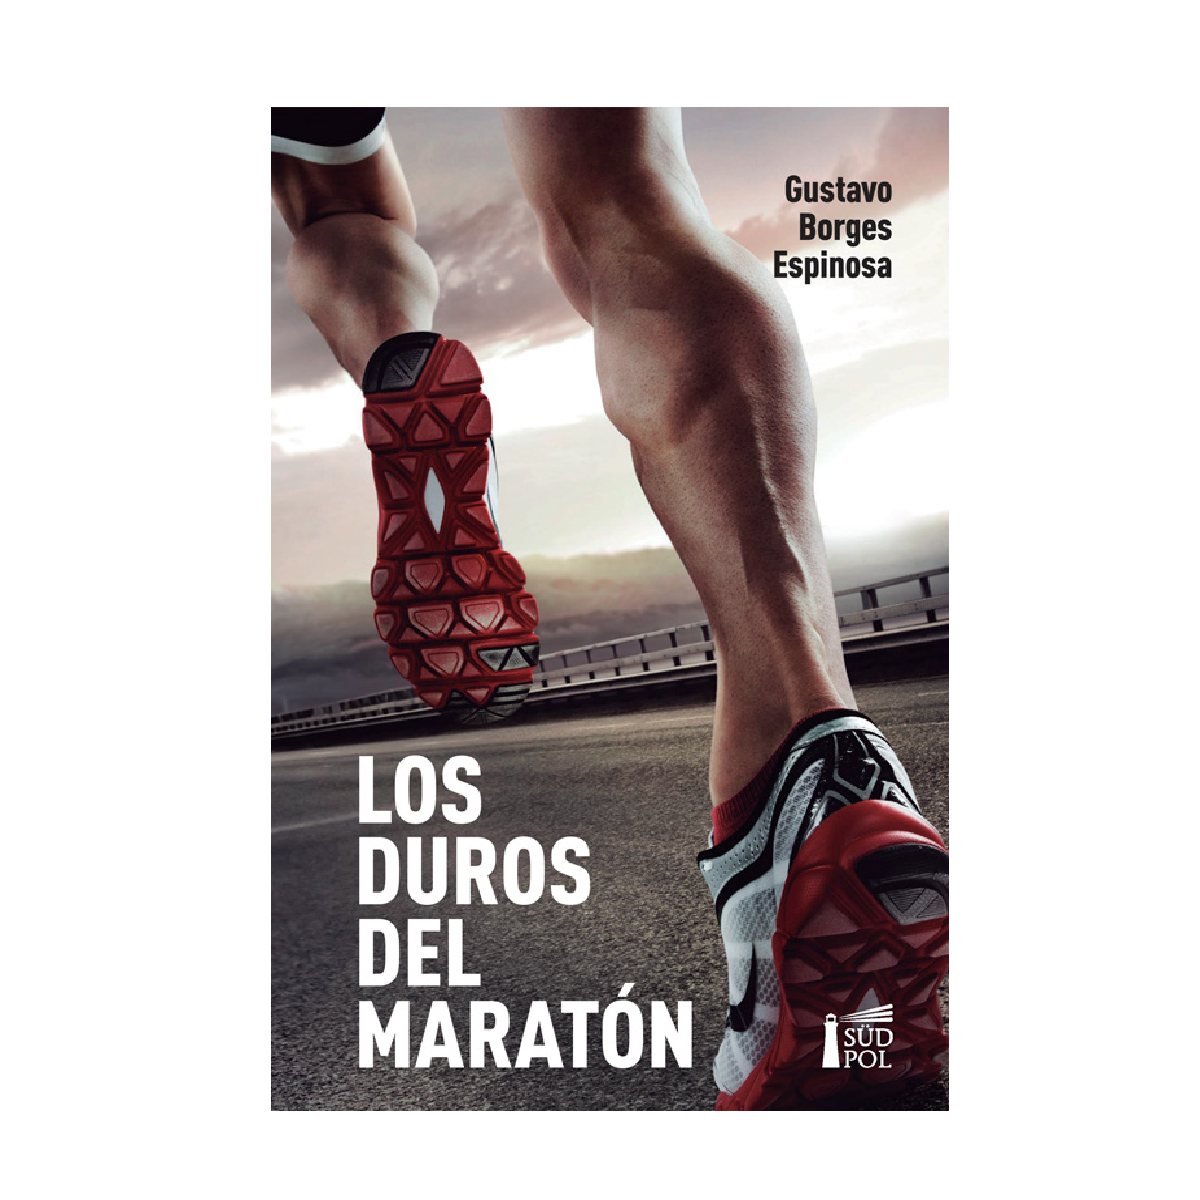 Los duros del maratón - Gustavo Borges